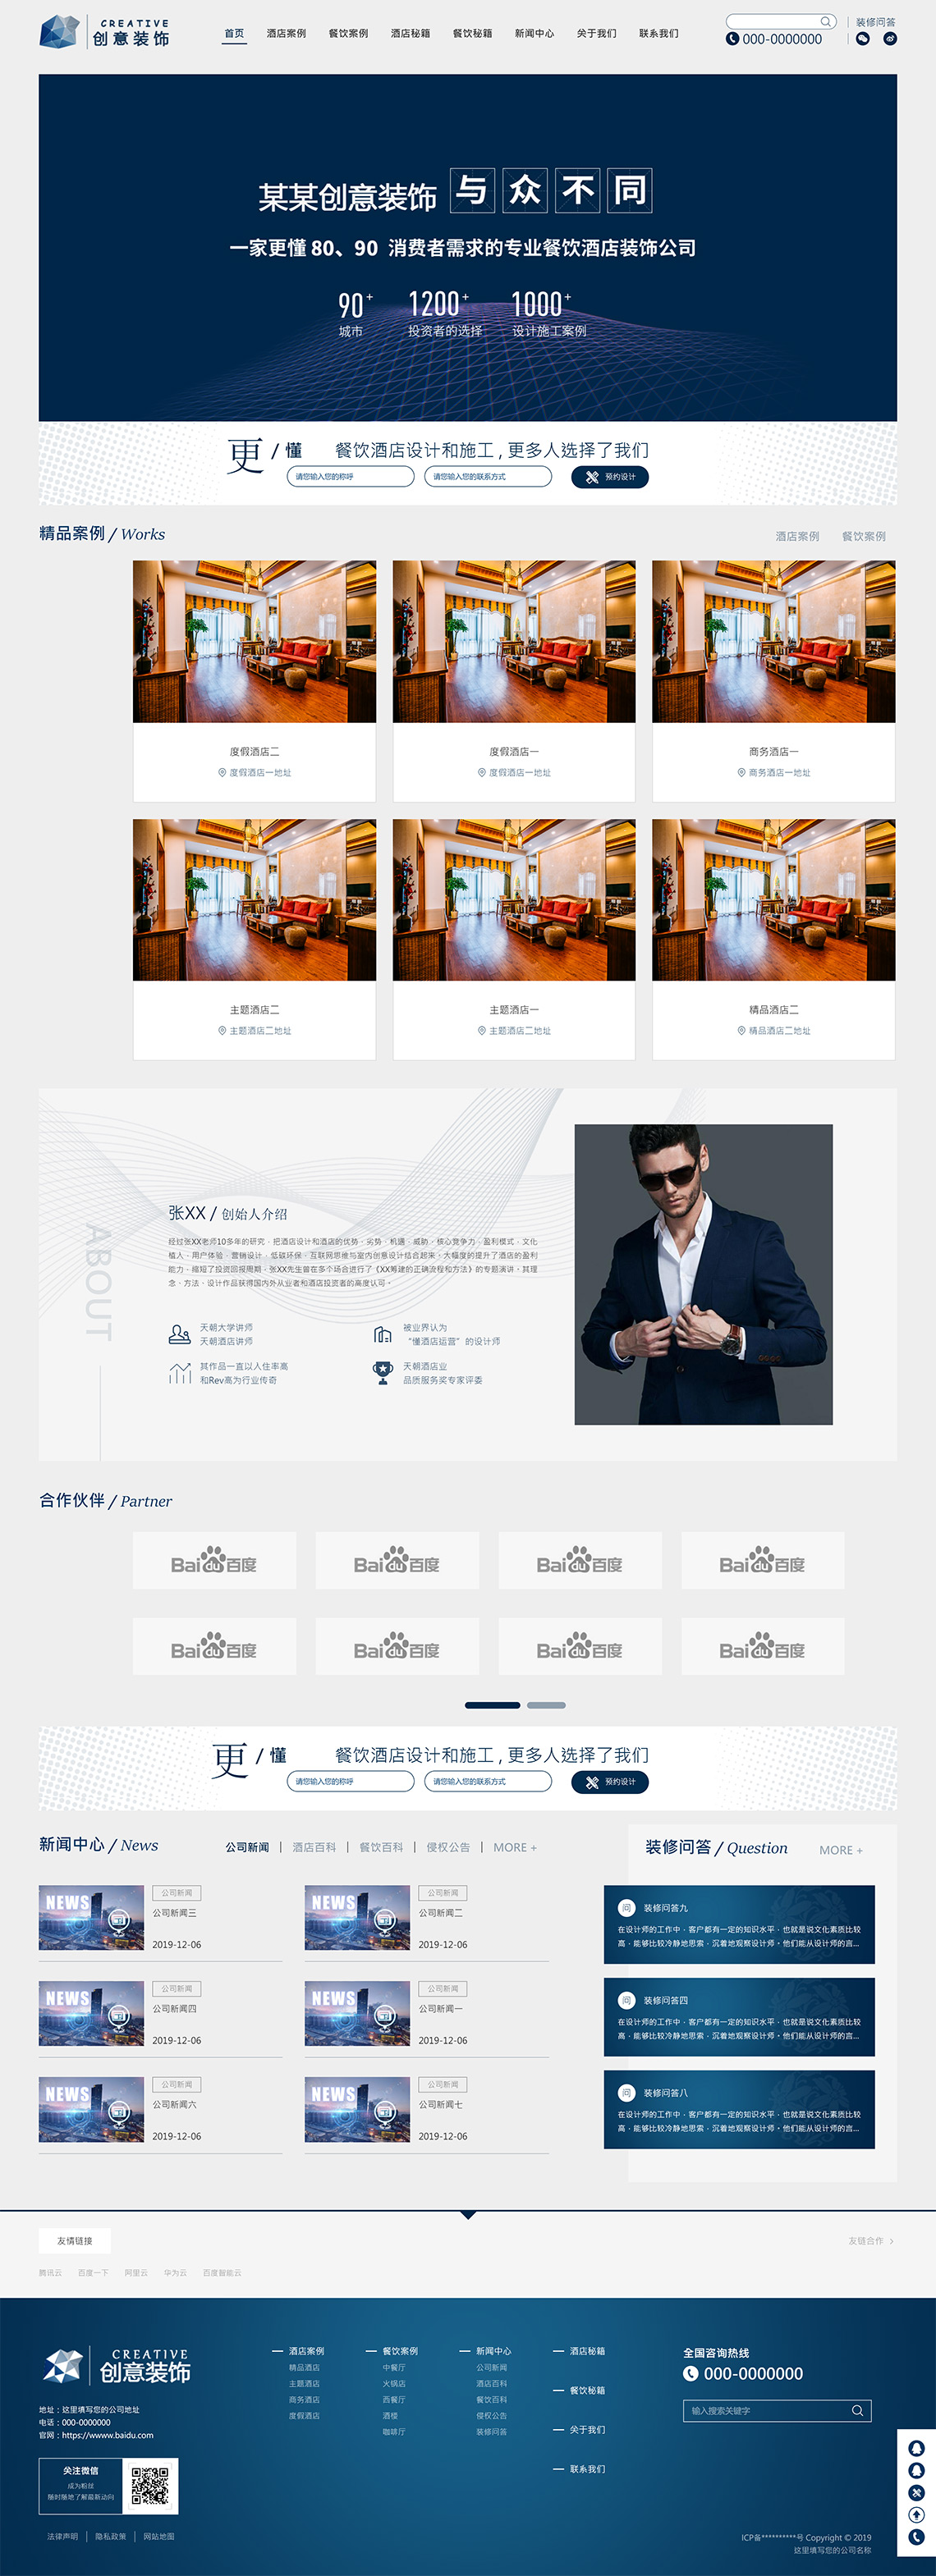 高端创意餐饮酒店装饰设计公司响应式企业网站模板